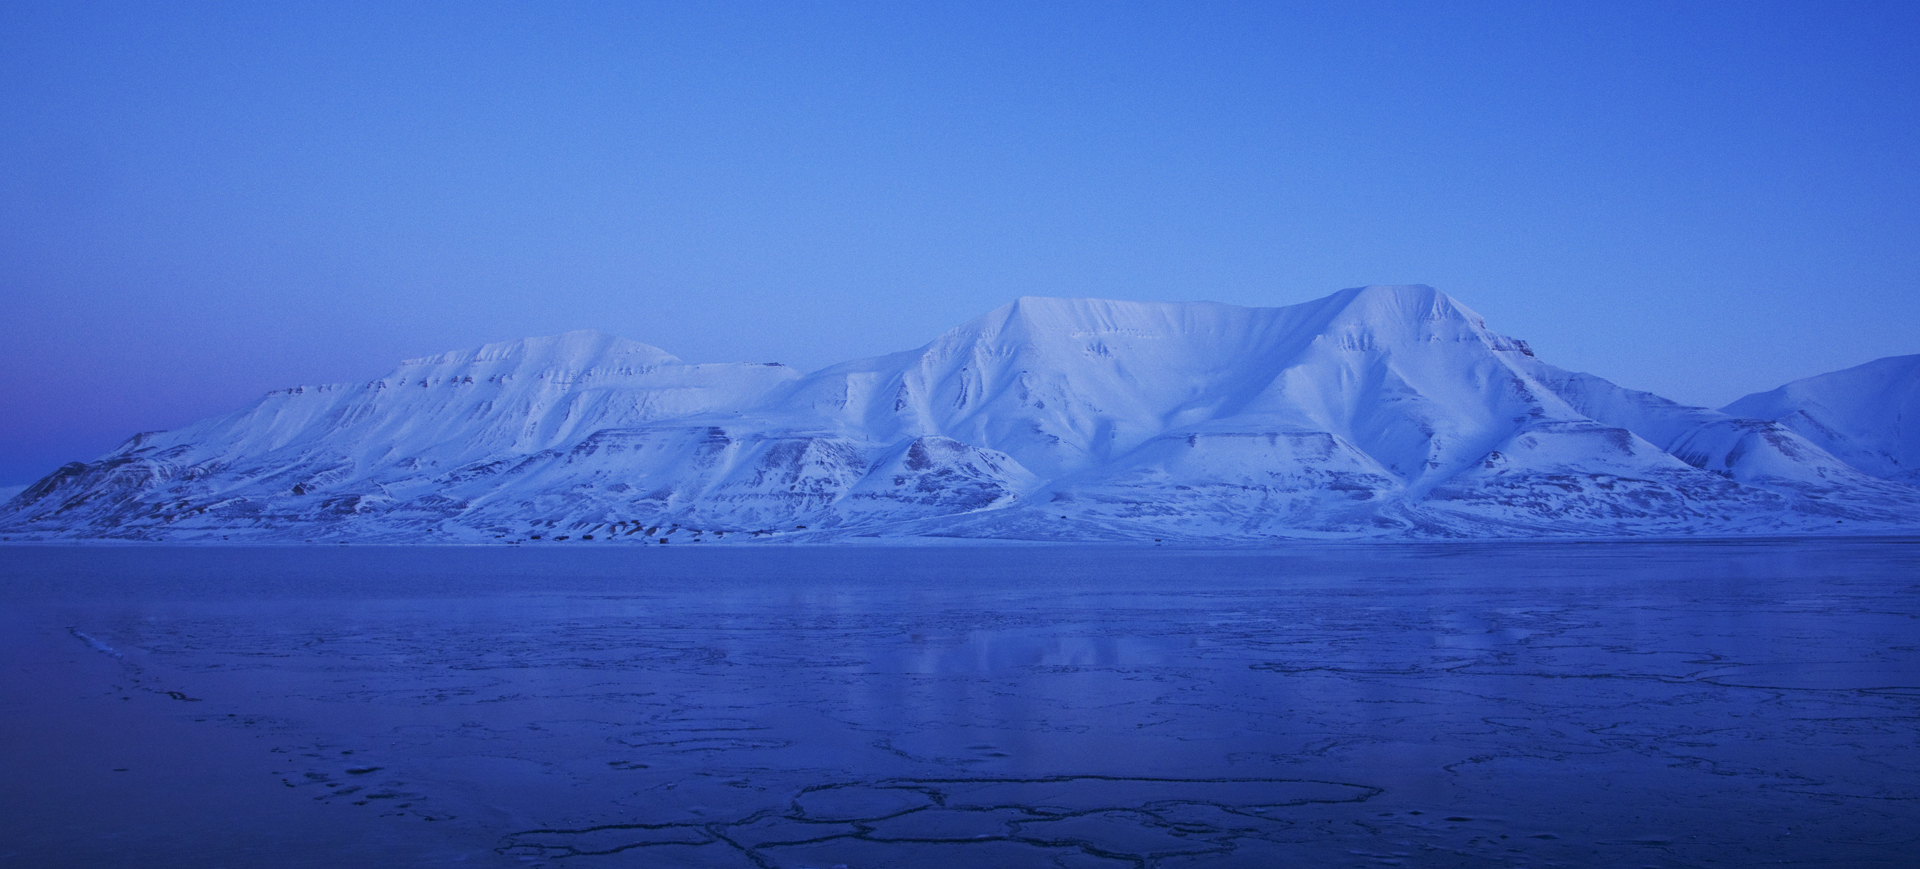 Arctic vista with Arctic Exhibition logo